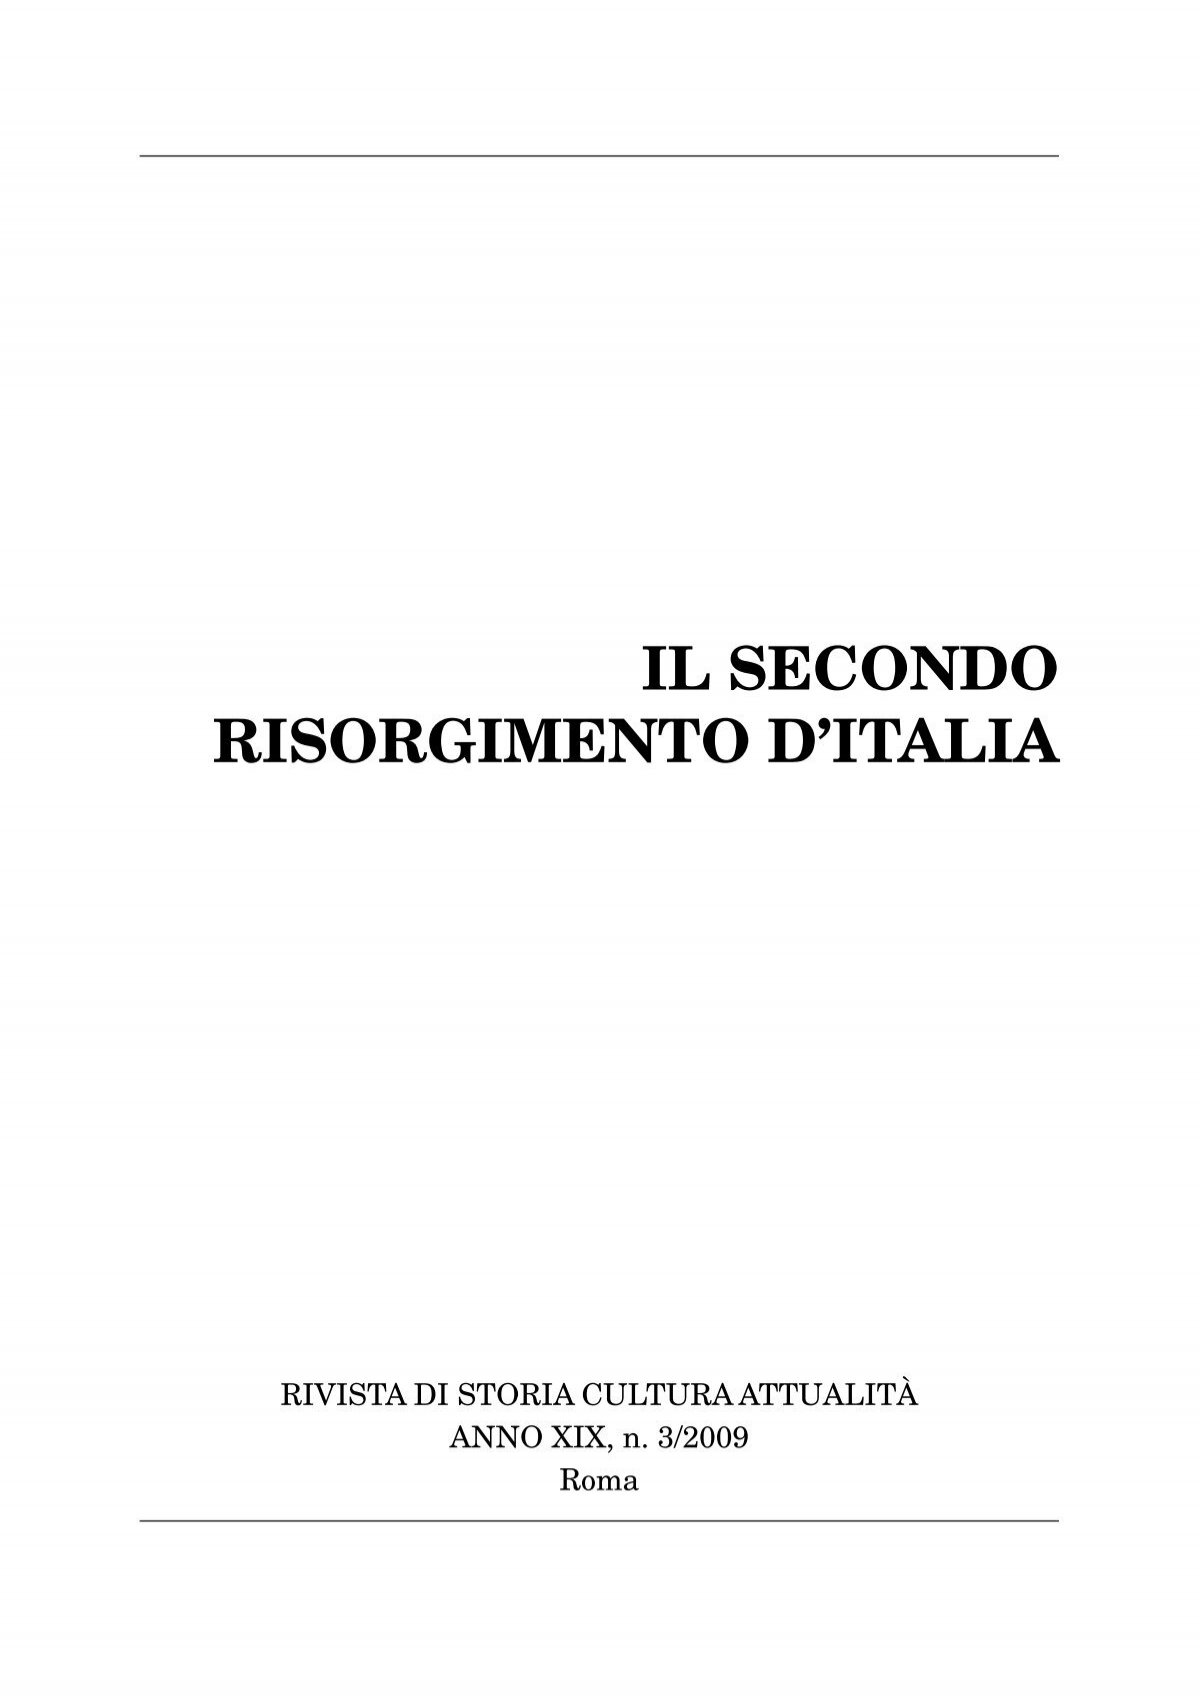 Storia d'Italia in 500 parole riassunto - Studia Rapido